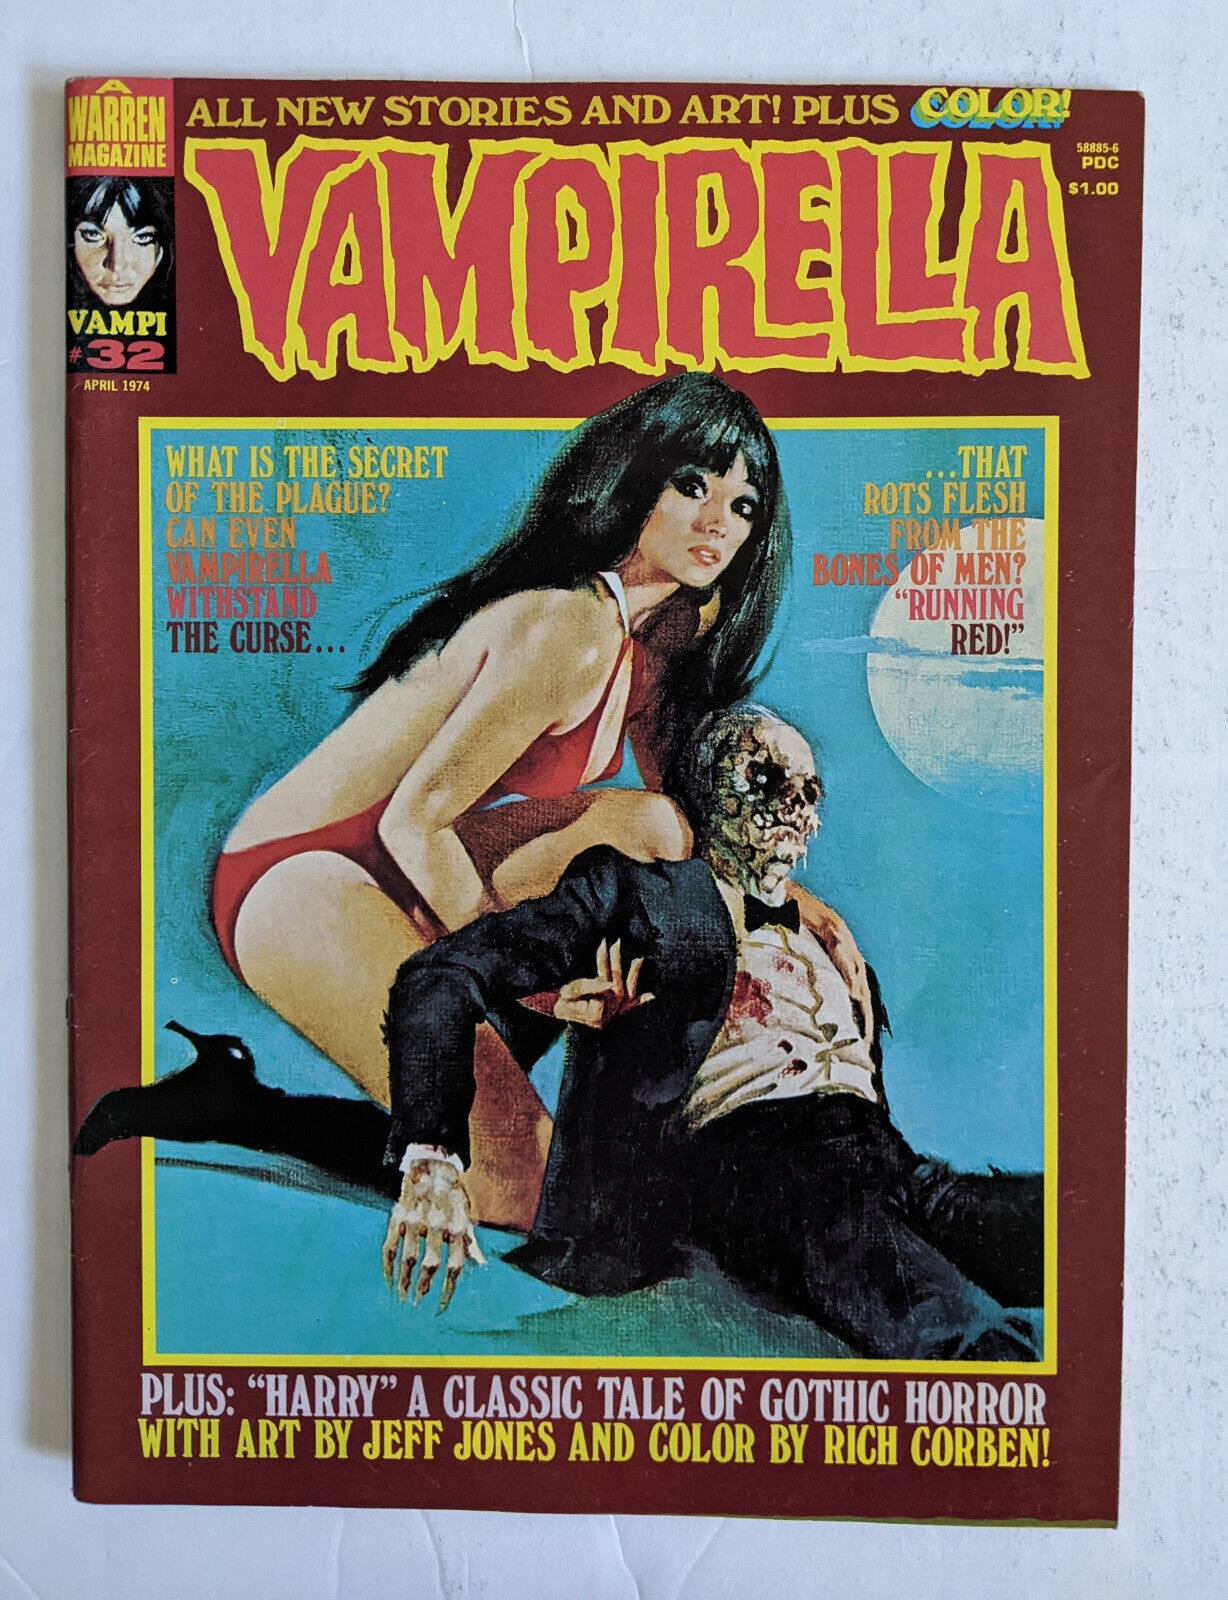 Vampirella #32  (1974) Warren Comics Horror Magazine VFN